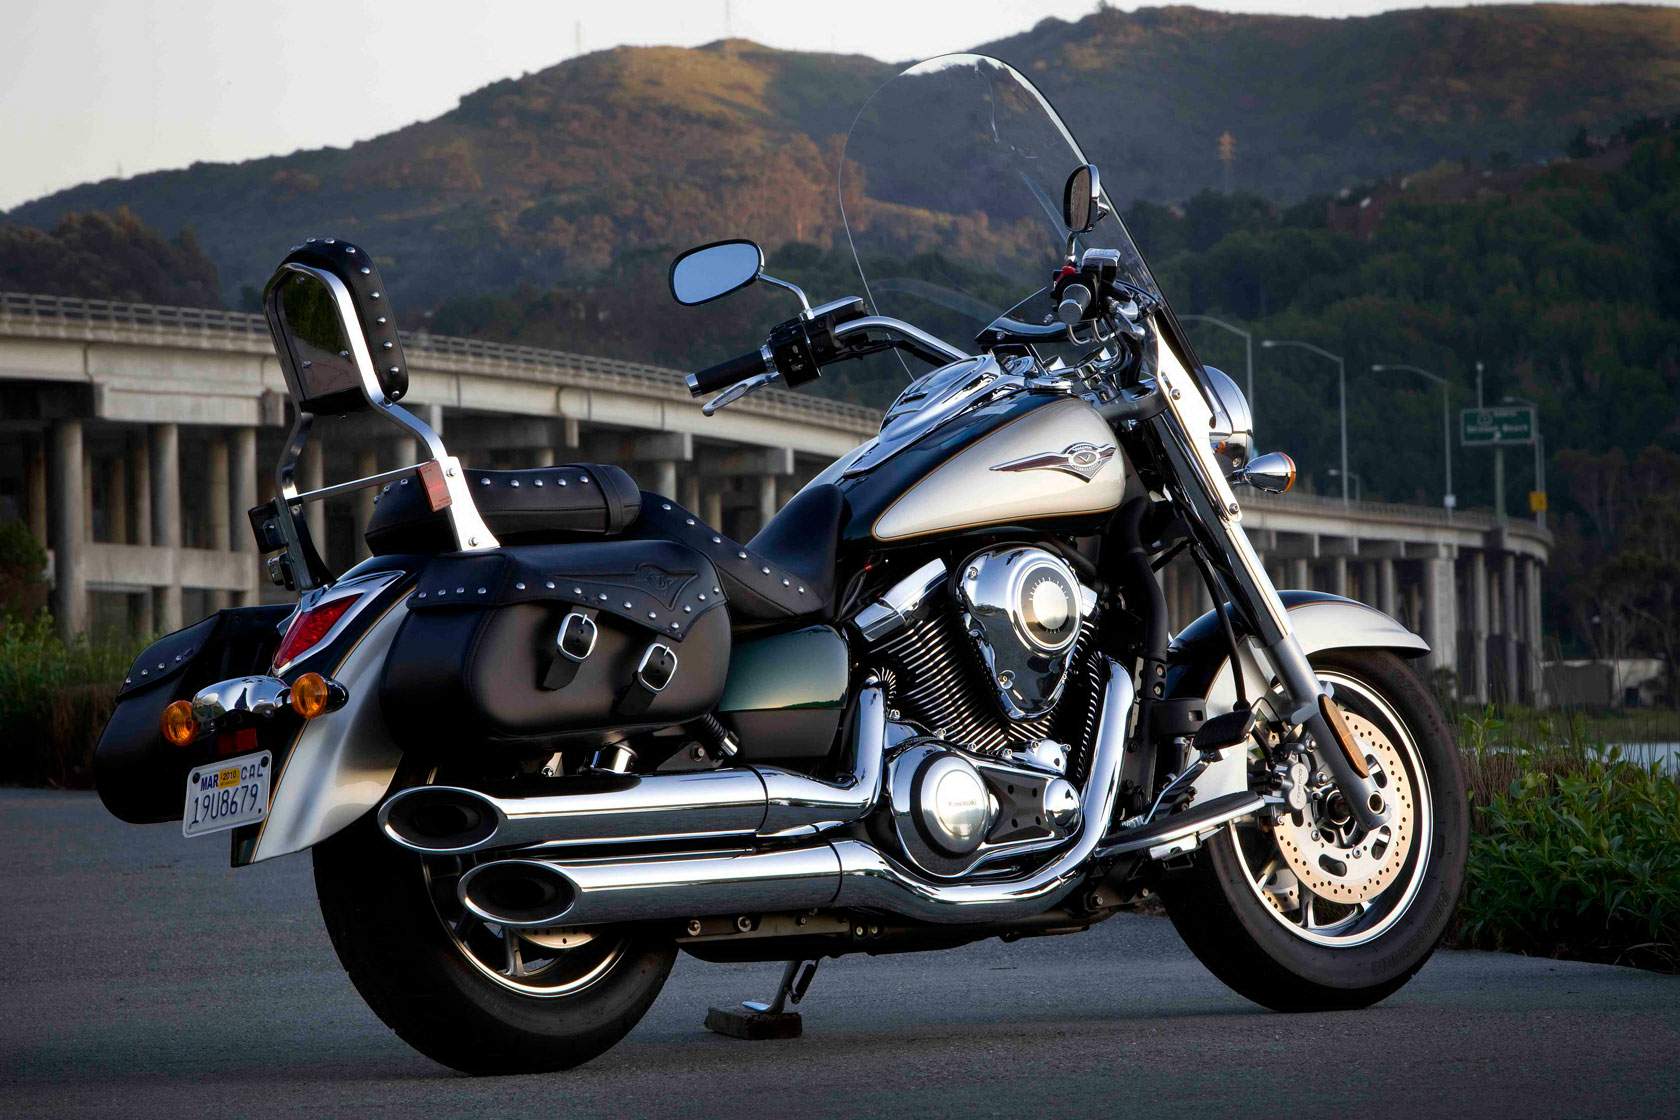 Мотоцикл kawasaki vn 900 light tourer 2009 - изучаем все нюансы